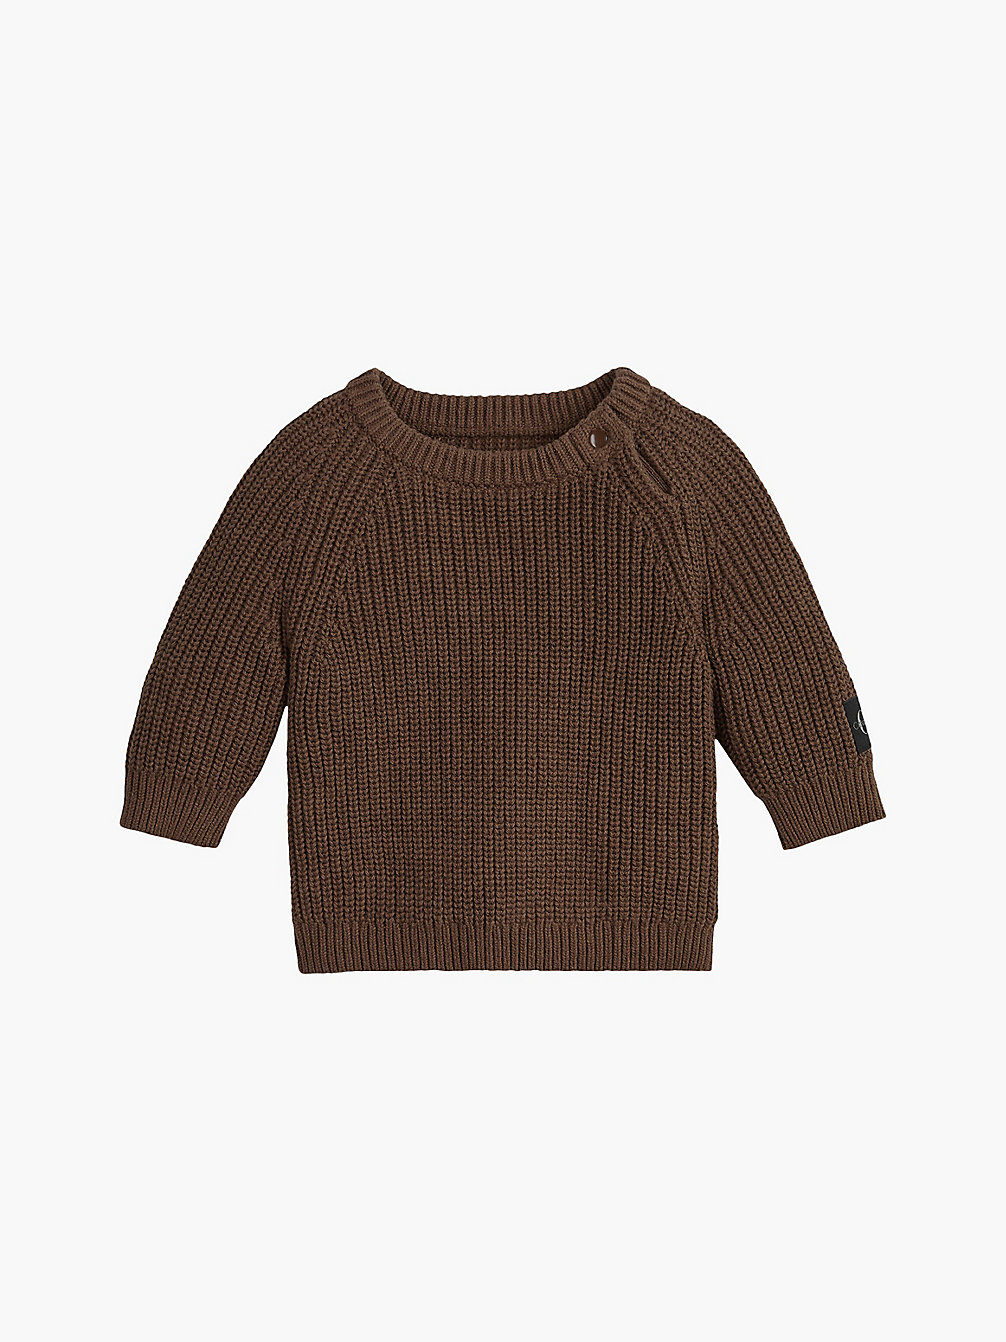 MILK CHOCOLATE Newborn Knitted Jumper undefined undefined Calvin Klein